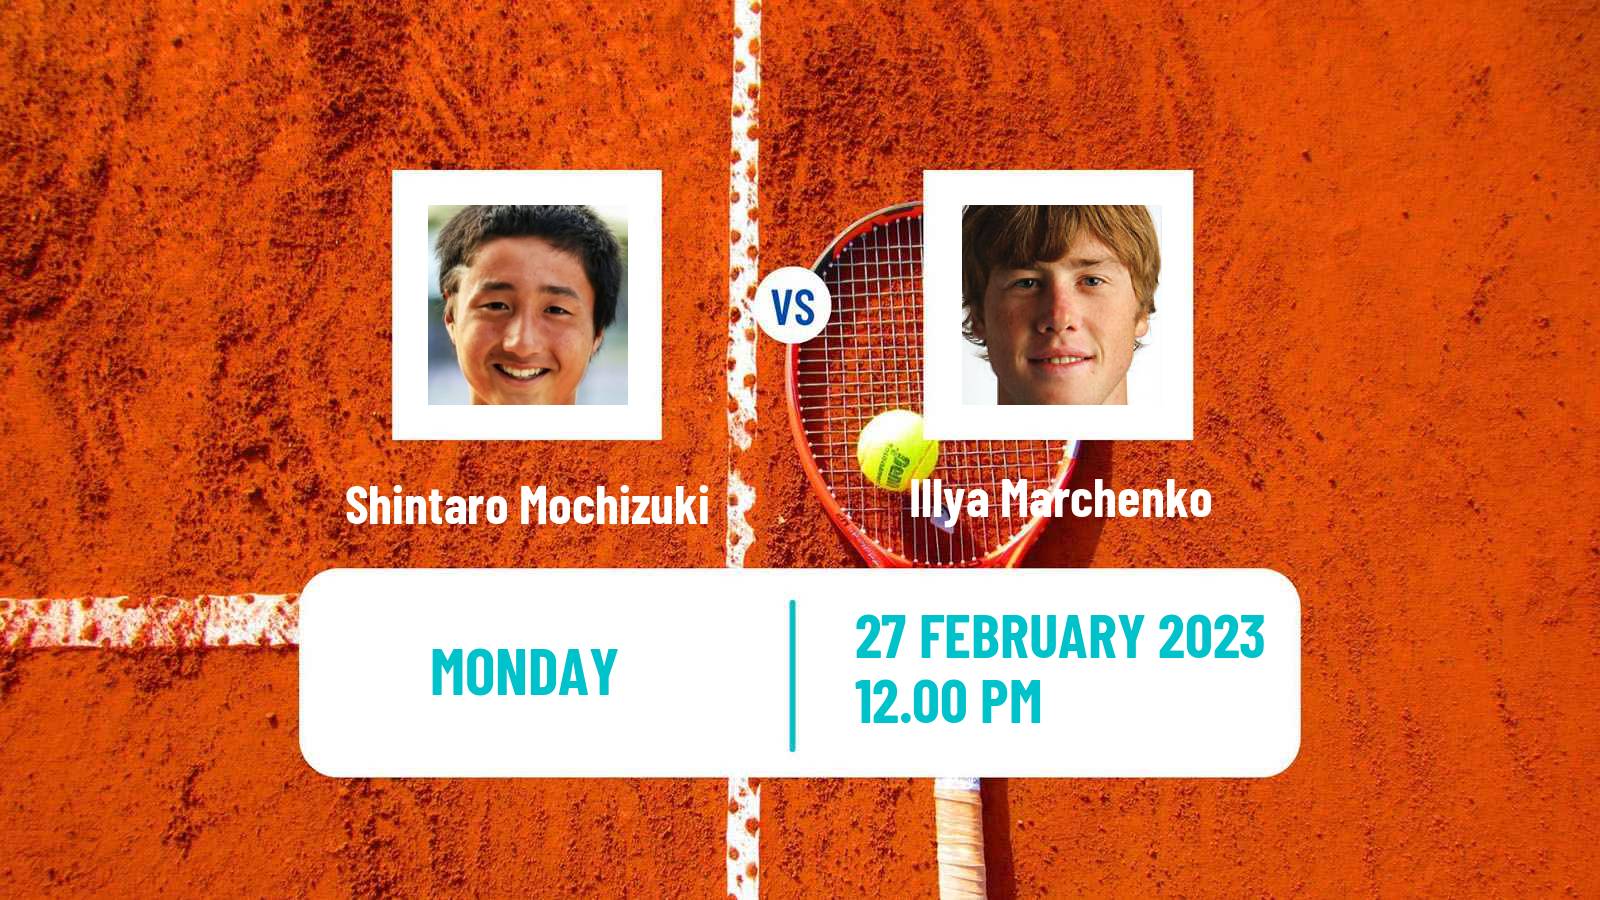 Tennis ATP Challenger Shintaro Mochizuki - Illya Marchenko